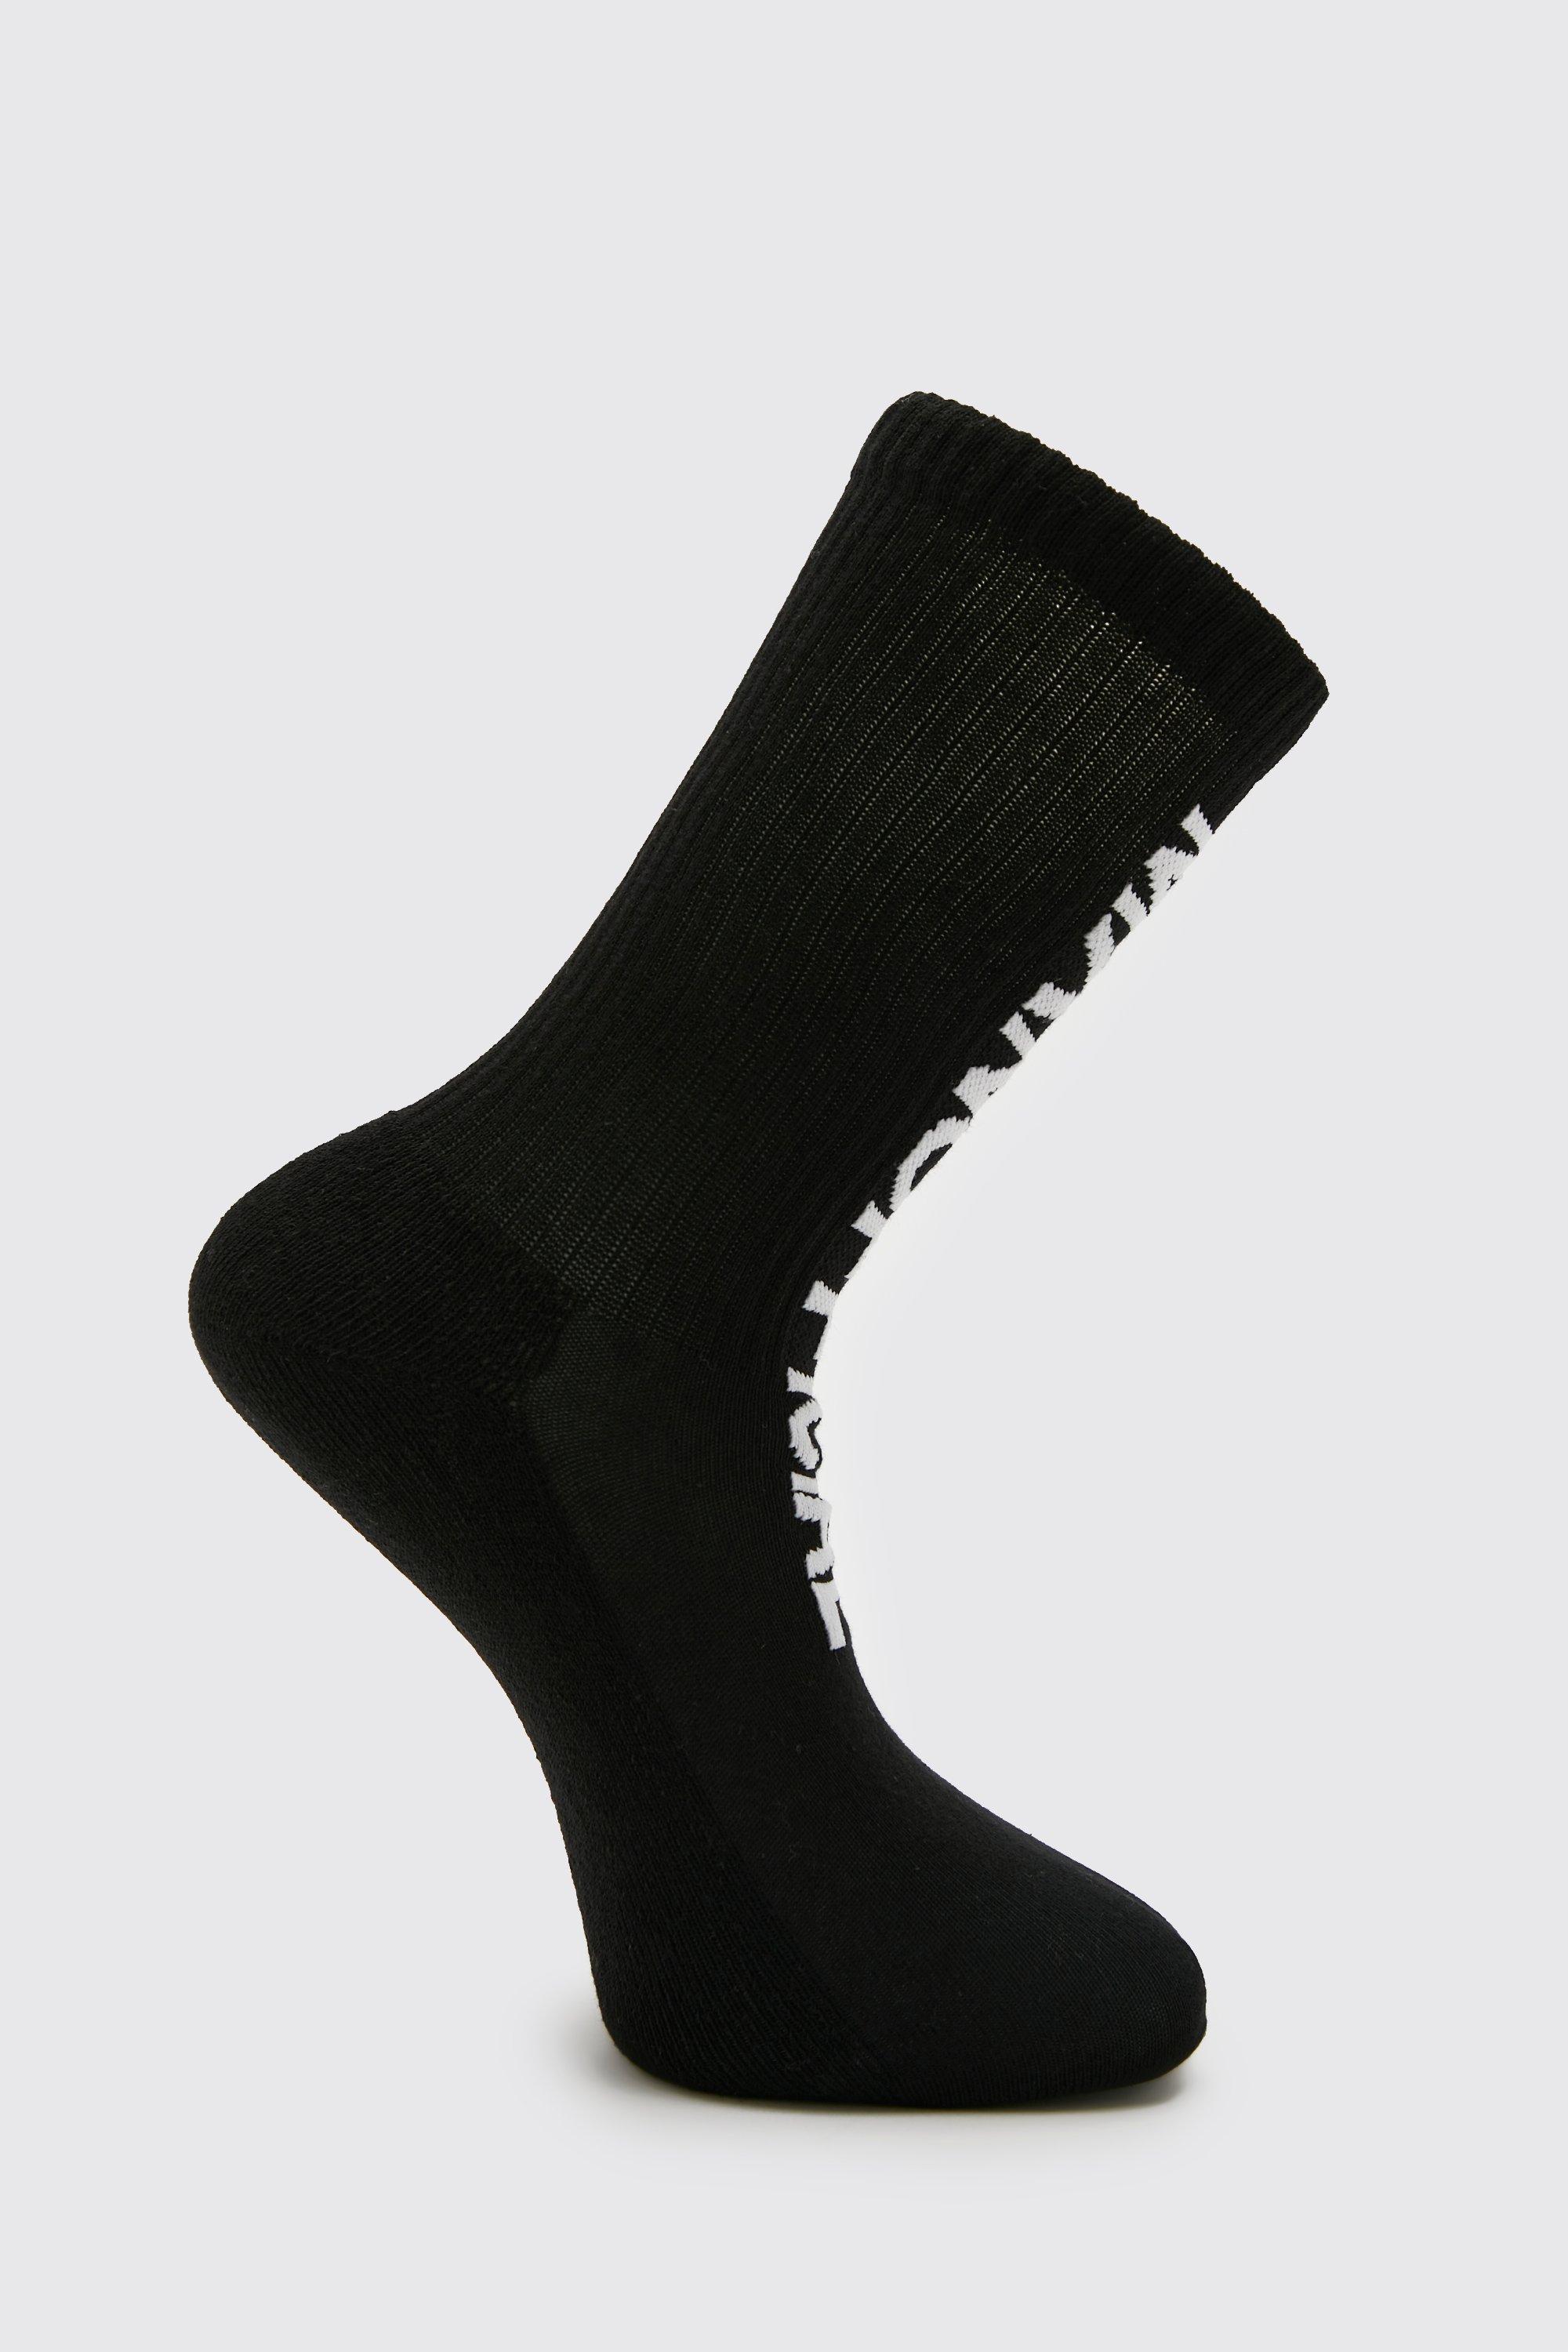 1Er-Pack Jacquard Man Official Socken - Multi - One Size, Multi